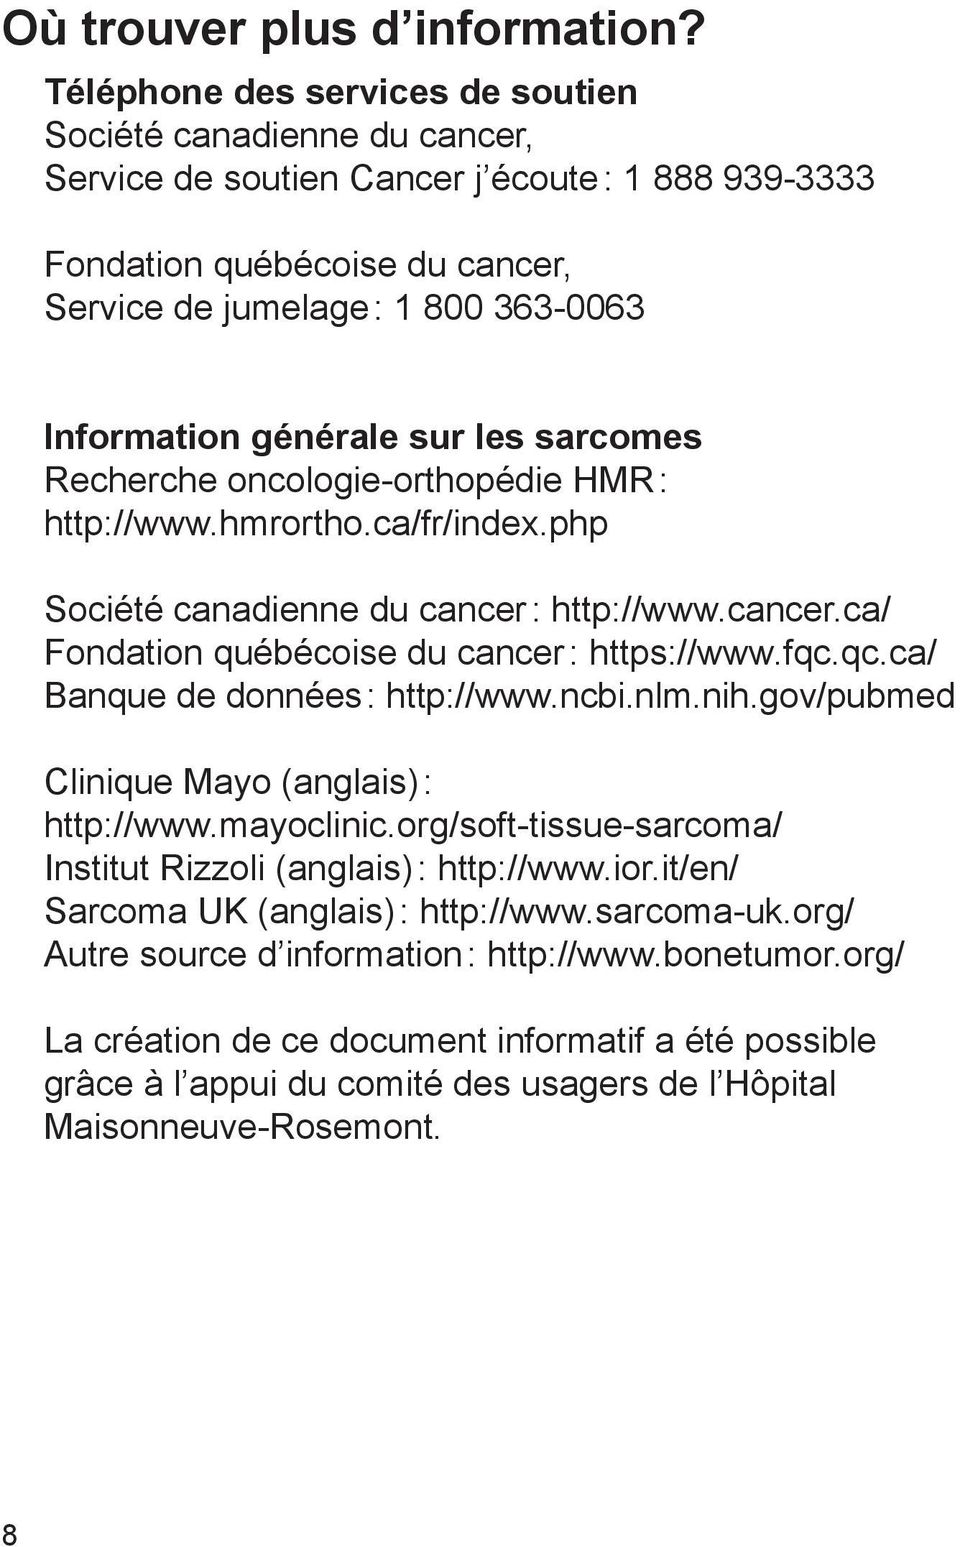 générale sur les sarcomes Recherche oncologie-orthopédie HMR : http://www.hmrortho.ca/fr/index.php Société canadienne du cancer : http://www.cancer.ca/ Fondation québécoise du cancer : https://www.